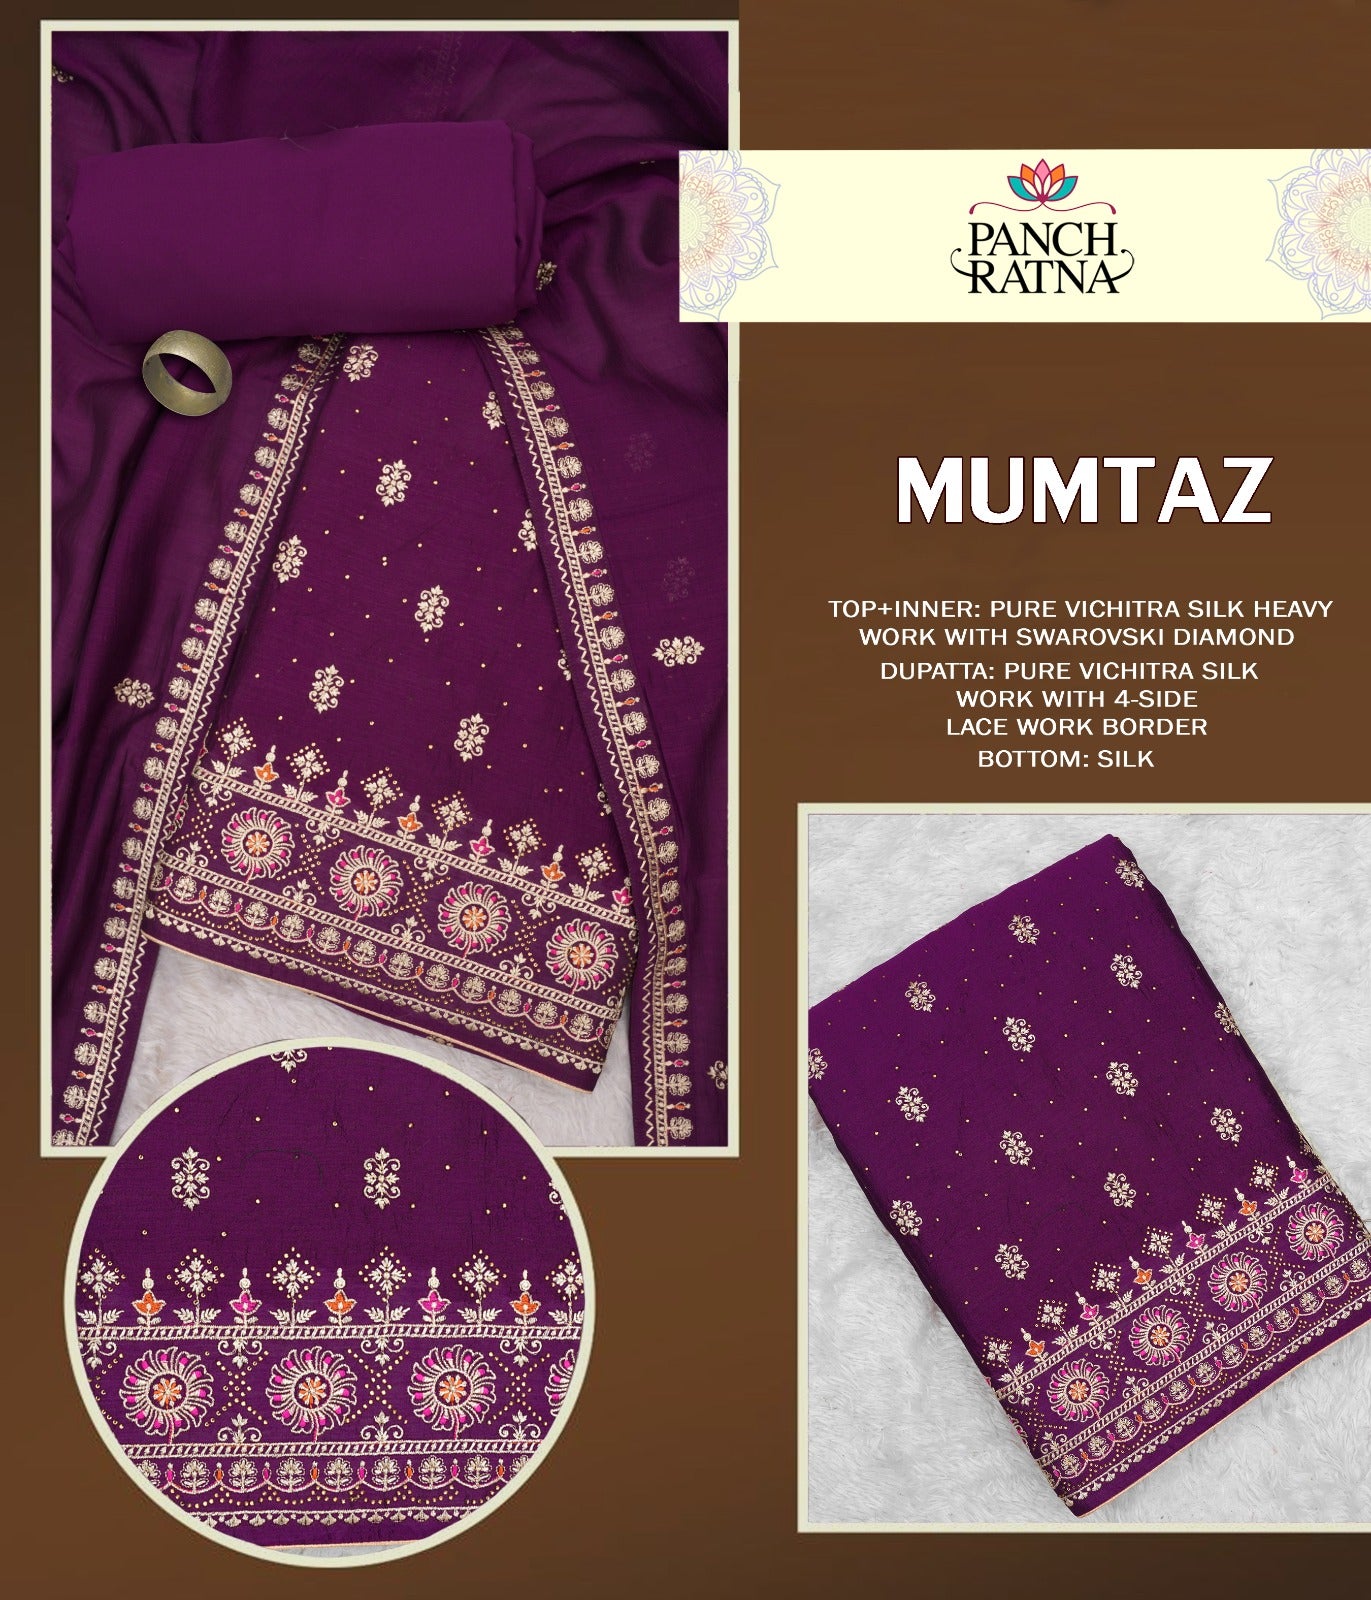 Mumtaz Panch Ratna Vichitra Silk Salwar Suits